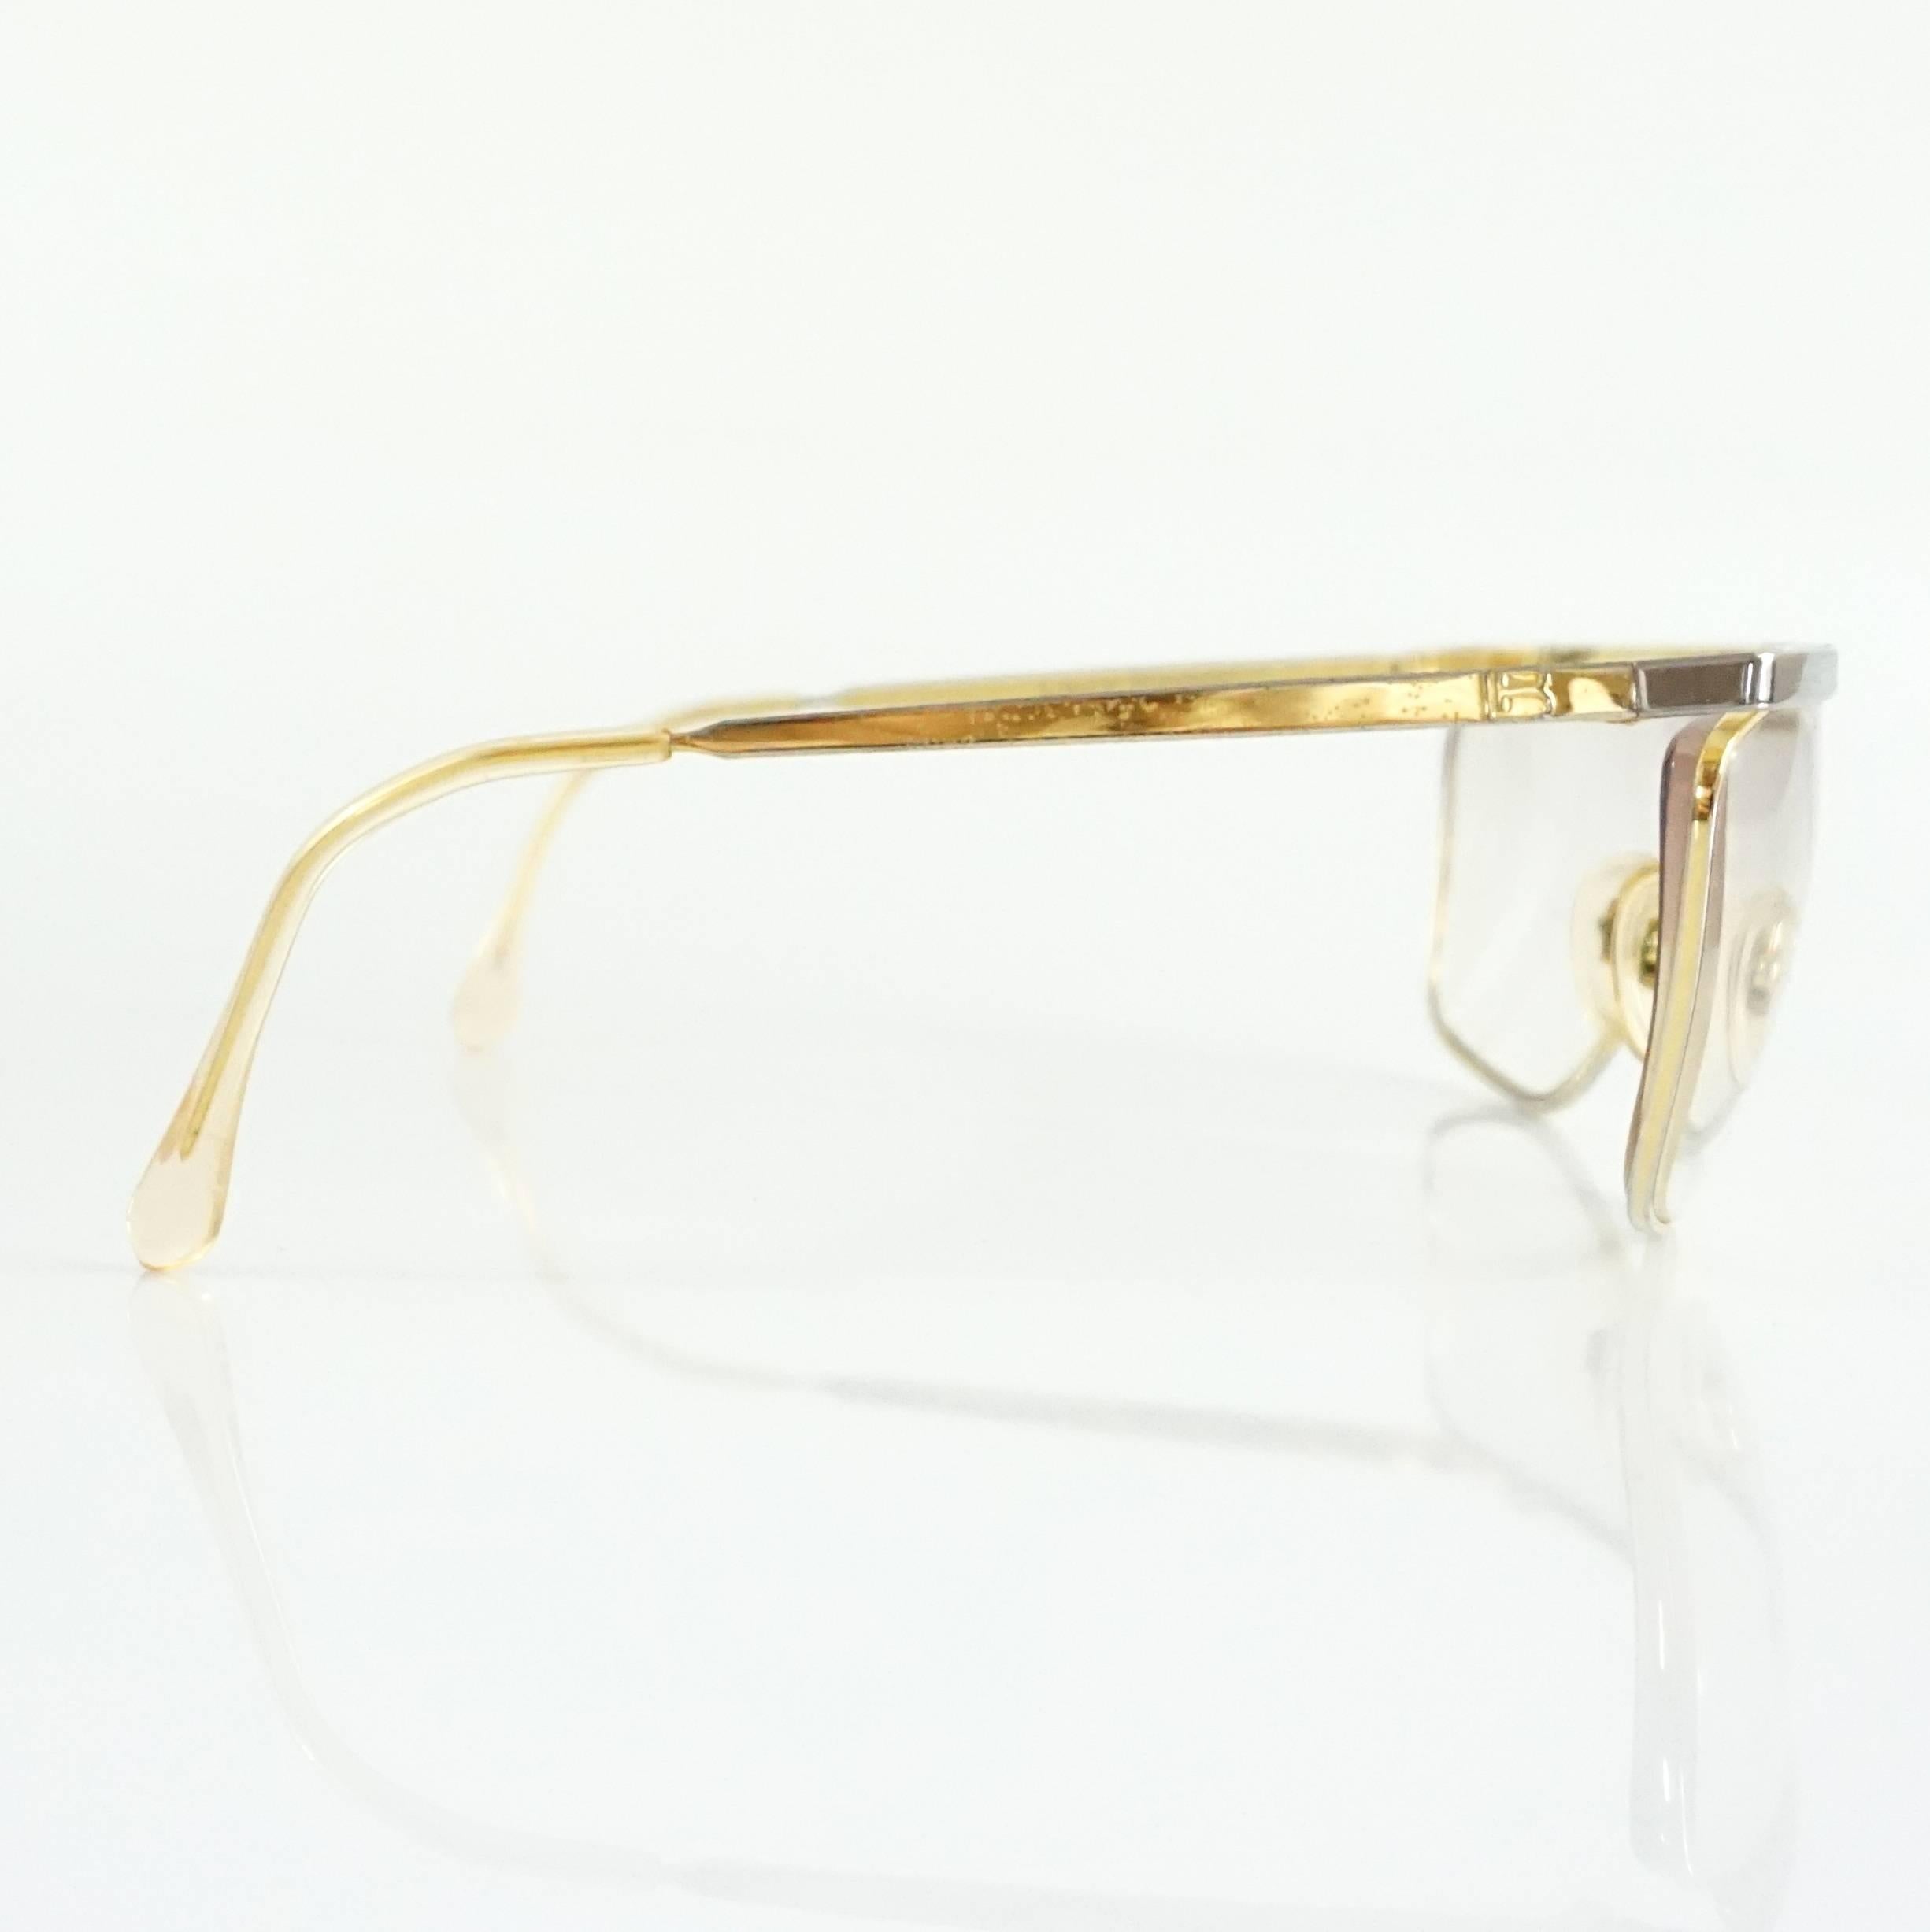 Diese Laura Biagiotti Brille ist gold und silber. Sie sind in gutem Zustand und weisen allgemeine Gebrauchsspuren auf.

Messungen
Länge: 6.8